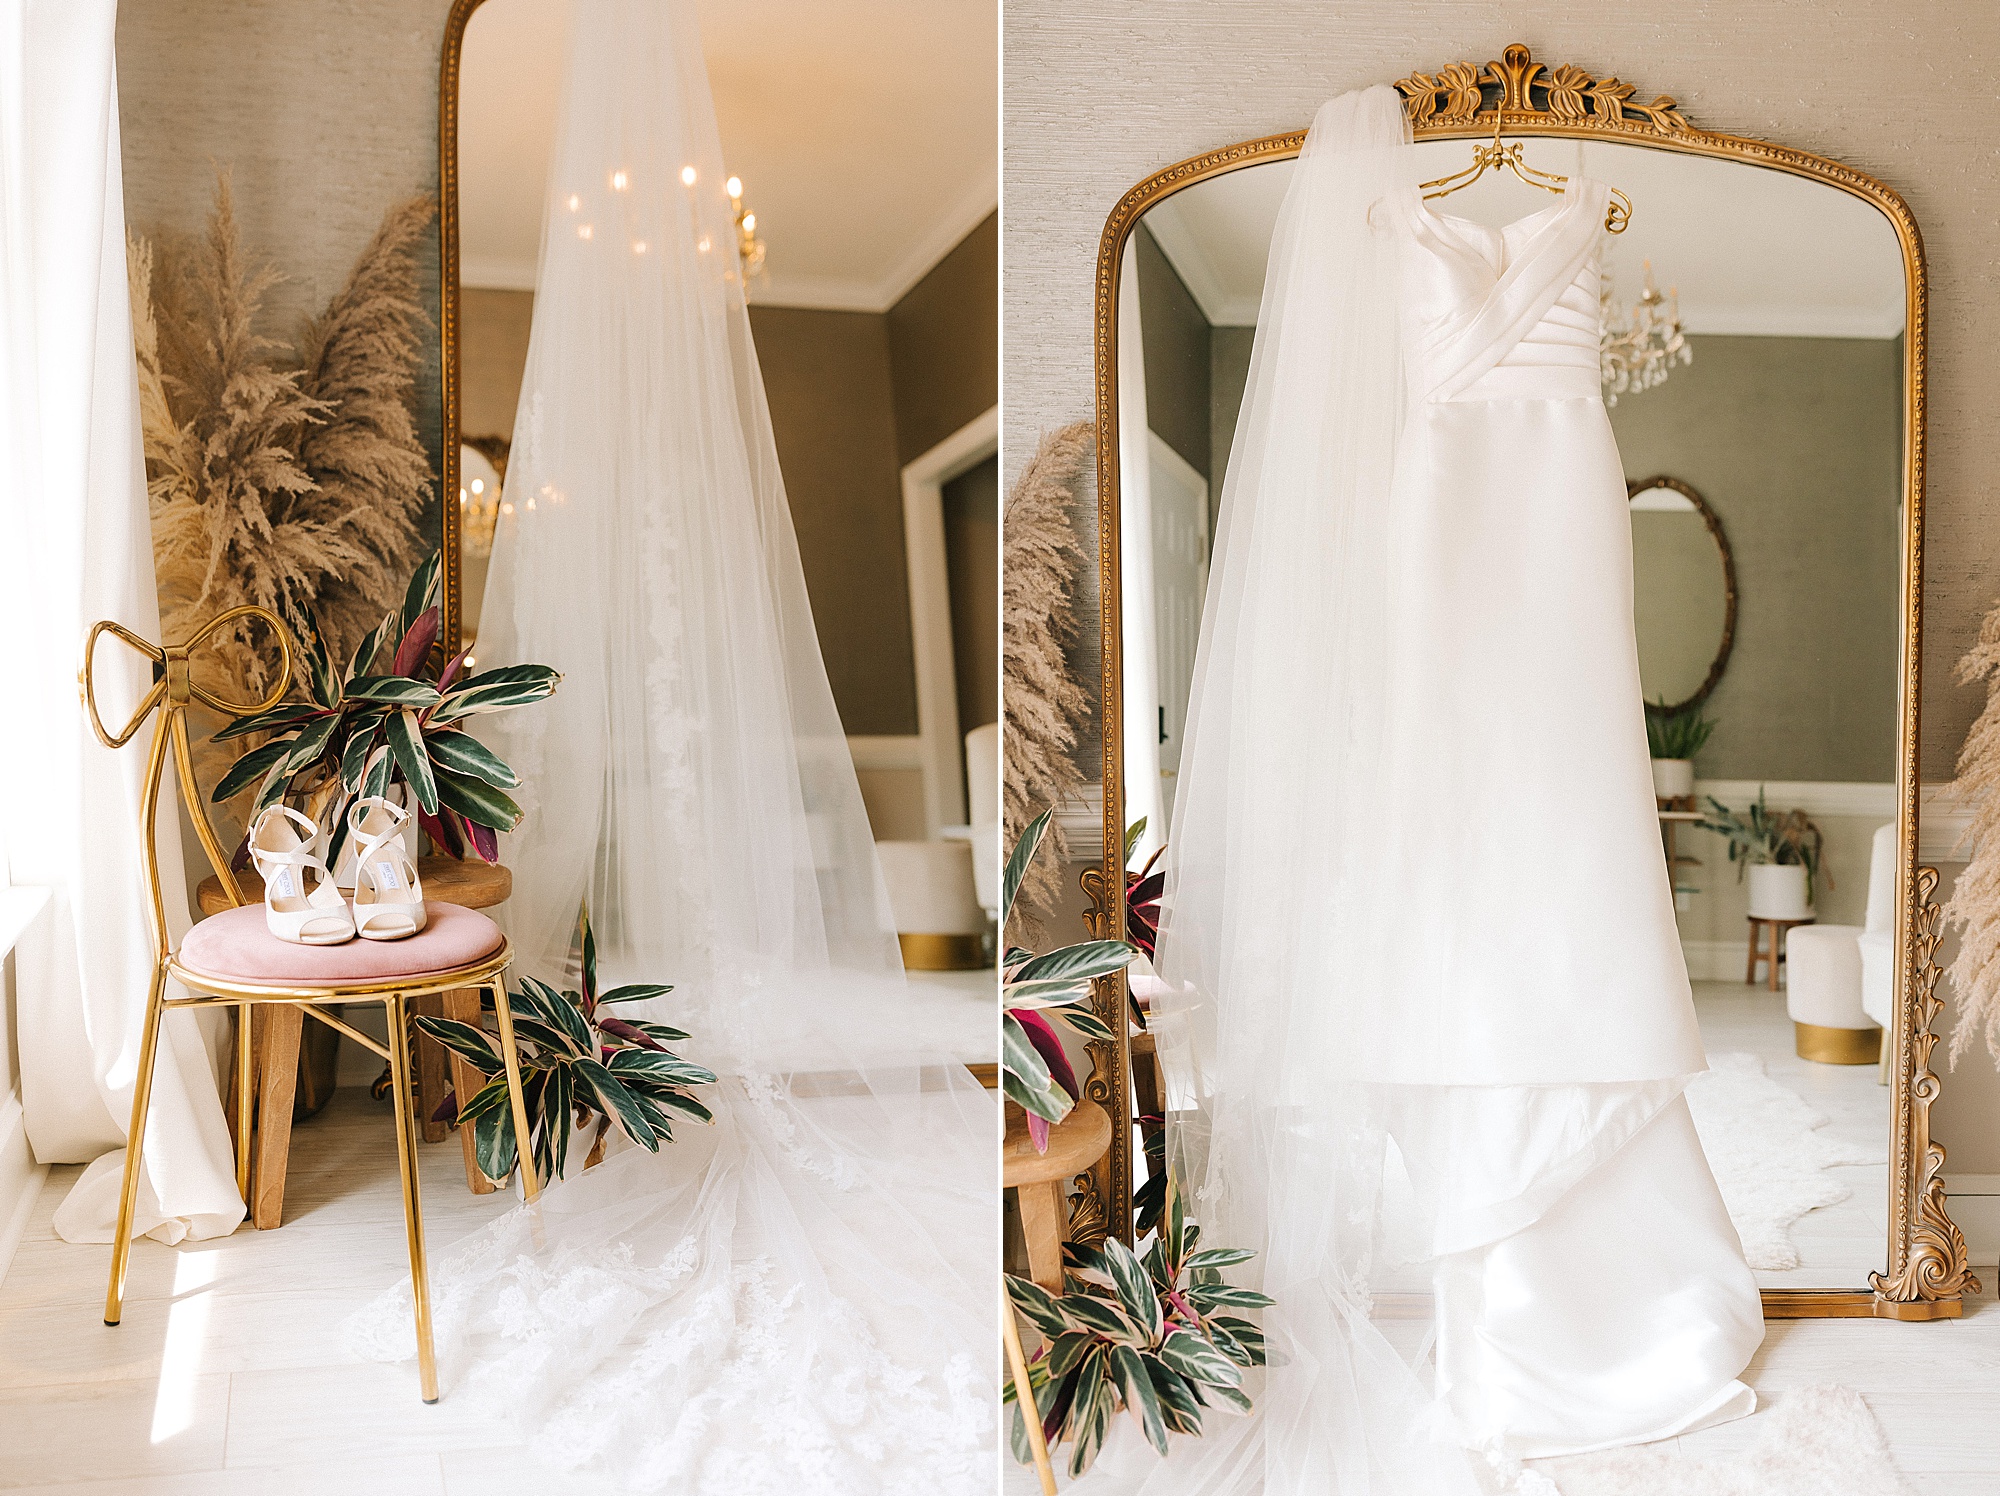 wedding veil and dress hangs n mirror before Raleigh NC wedding